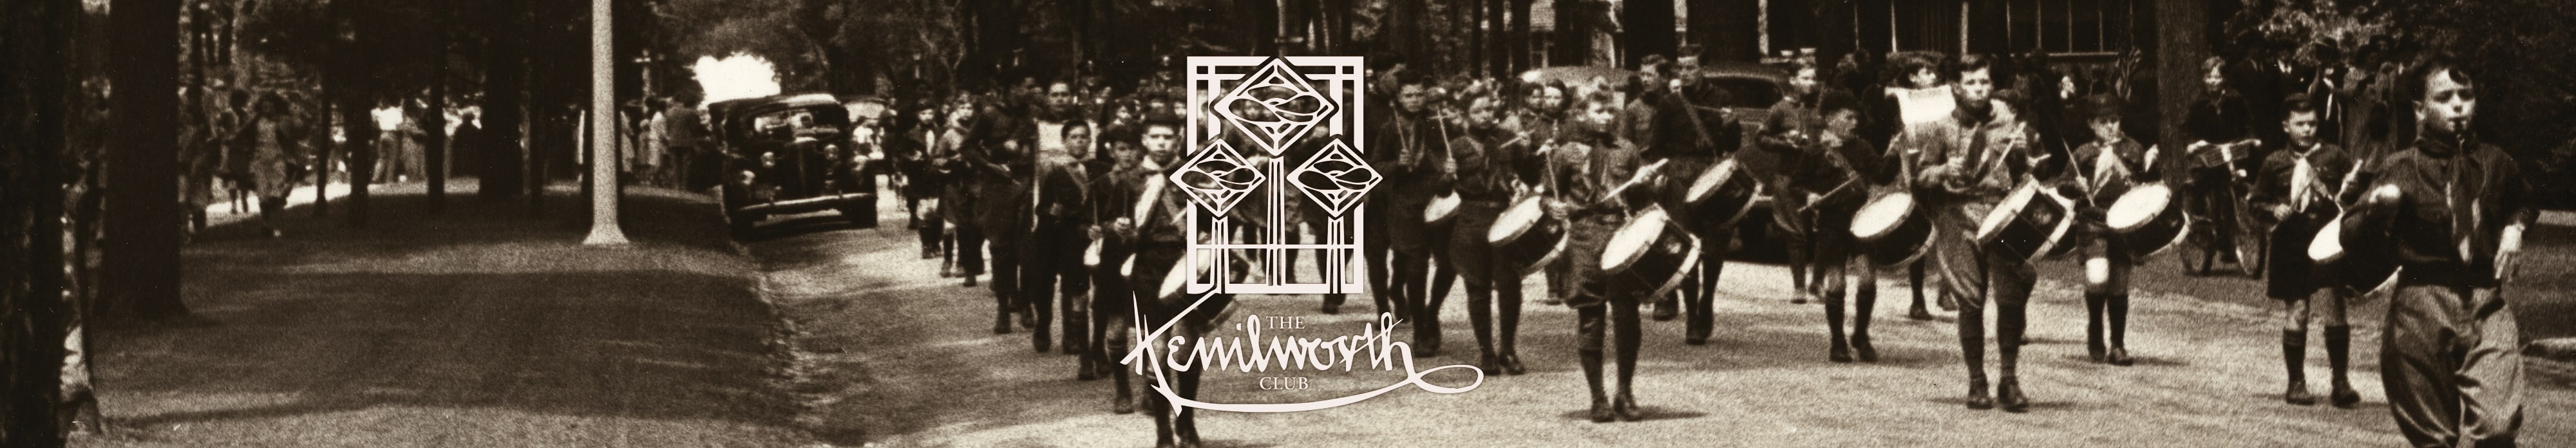 The Kenilworth Club